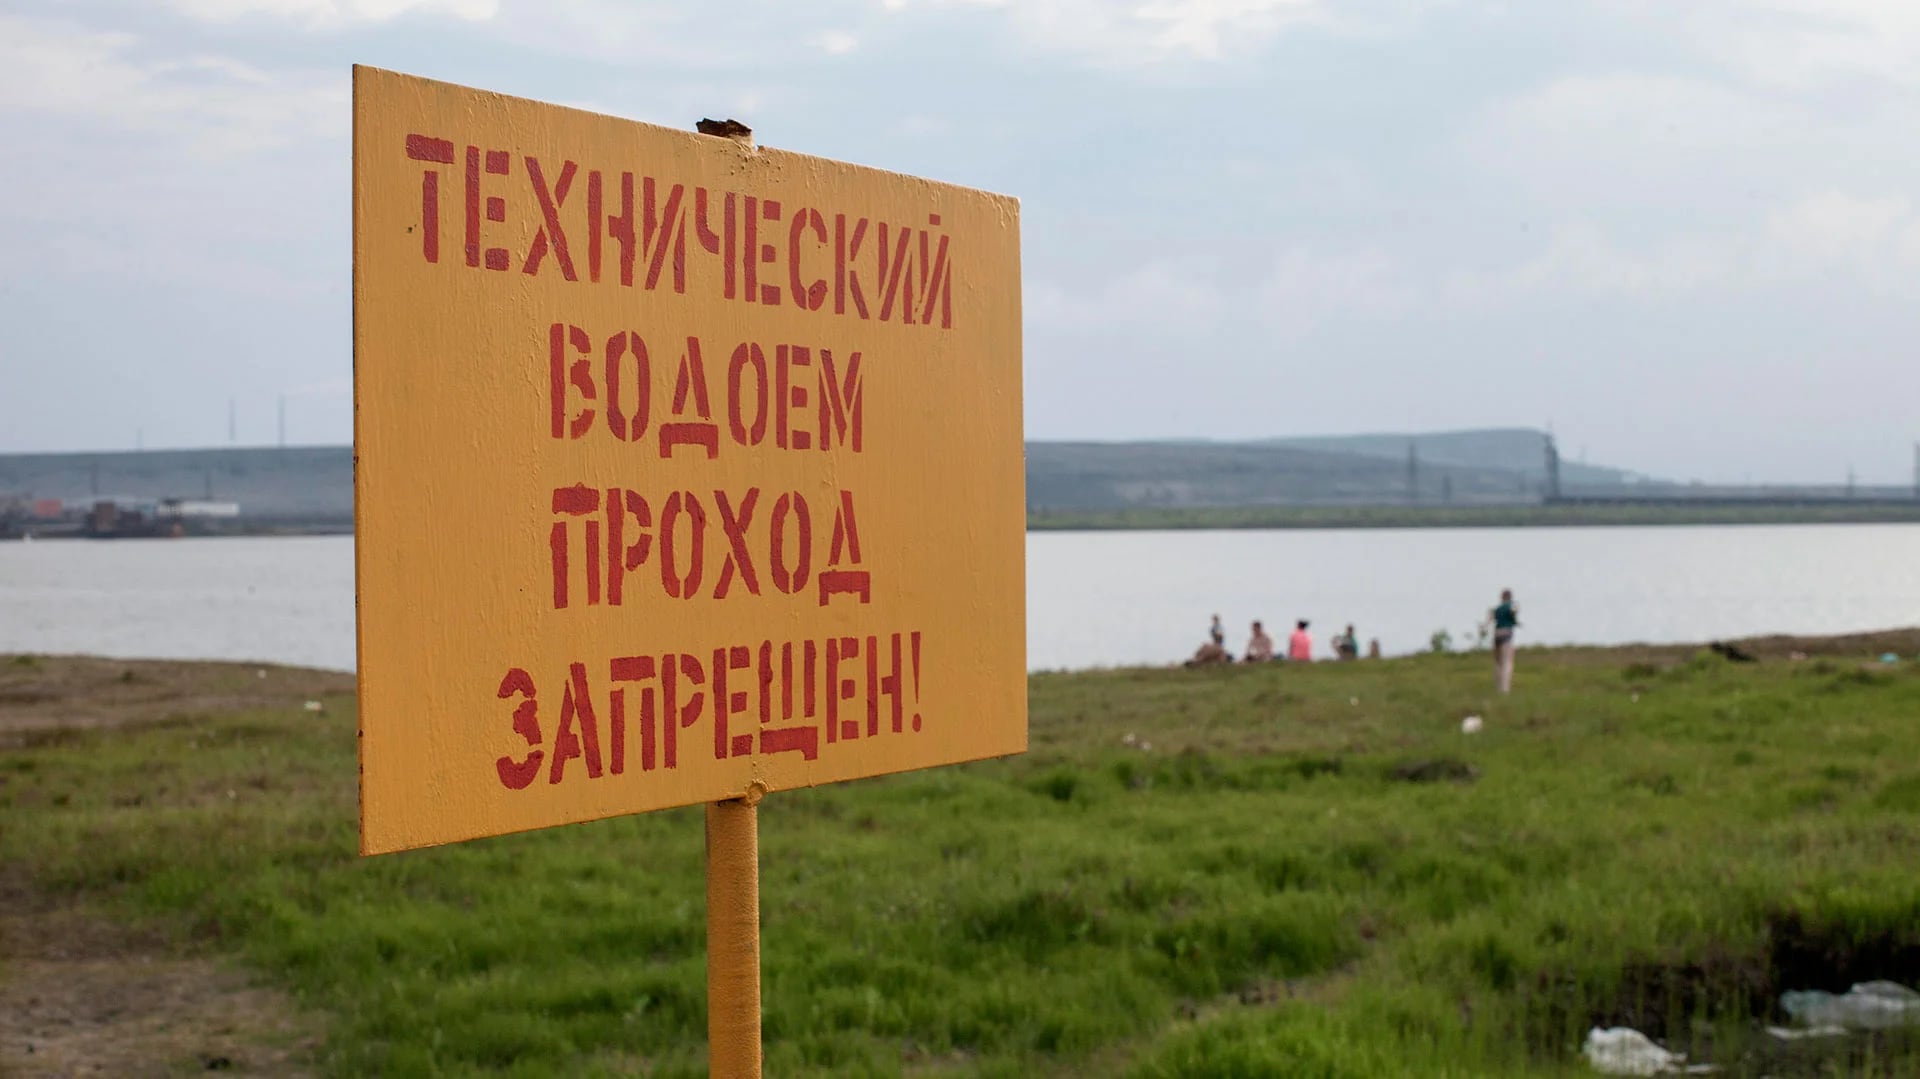 Las familias se refrescan en las lagunas articiales a pesar del cartel que advierte: “Aguas técnicas, prohibido el paso”.